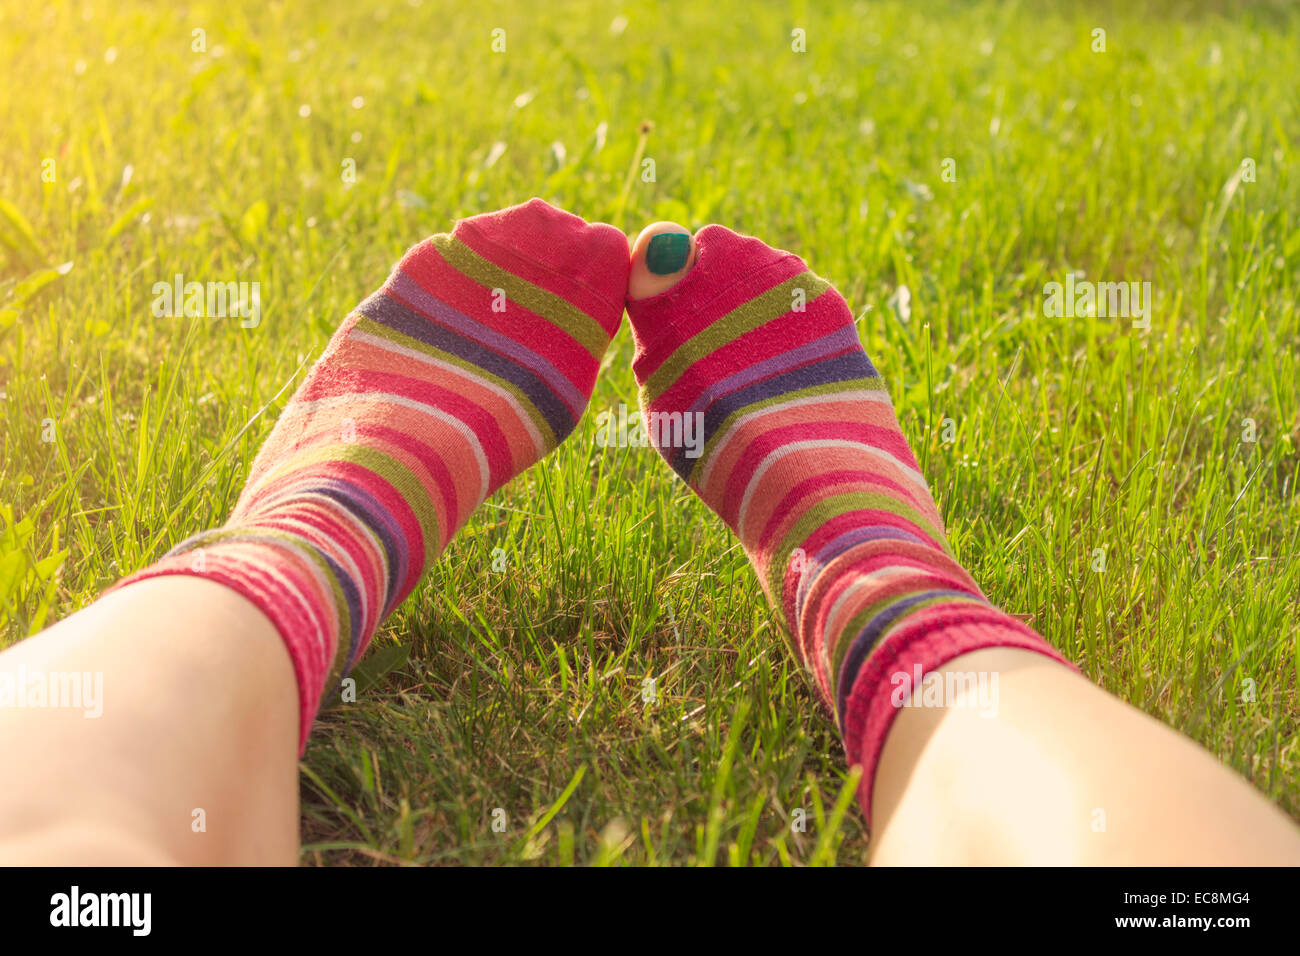 Ragazza adolescente godendo la molla giacente in erba, piedi in strappata calze colorate, toe peeping. Punto di vista personale, lens flare Foto Stock